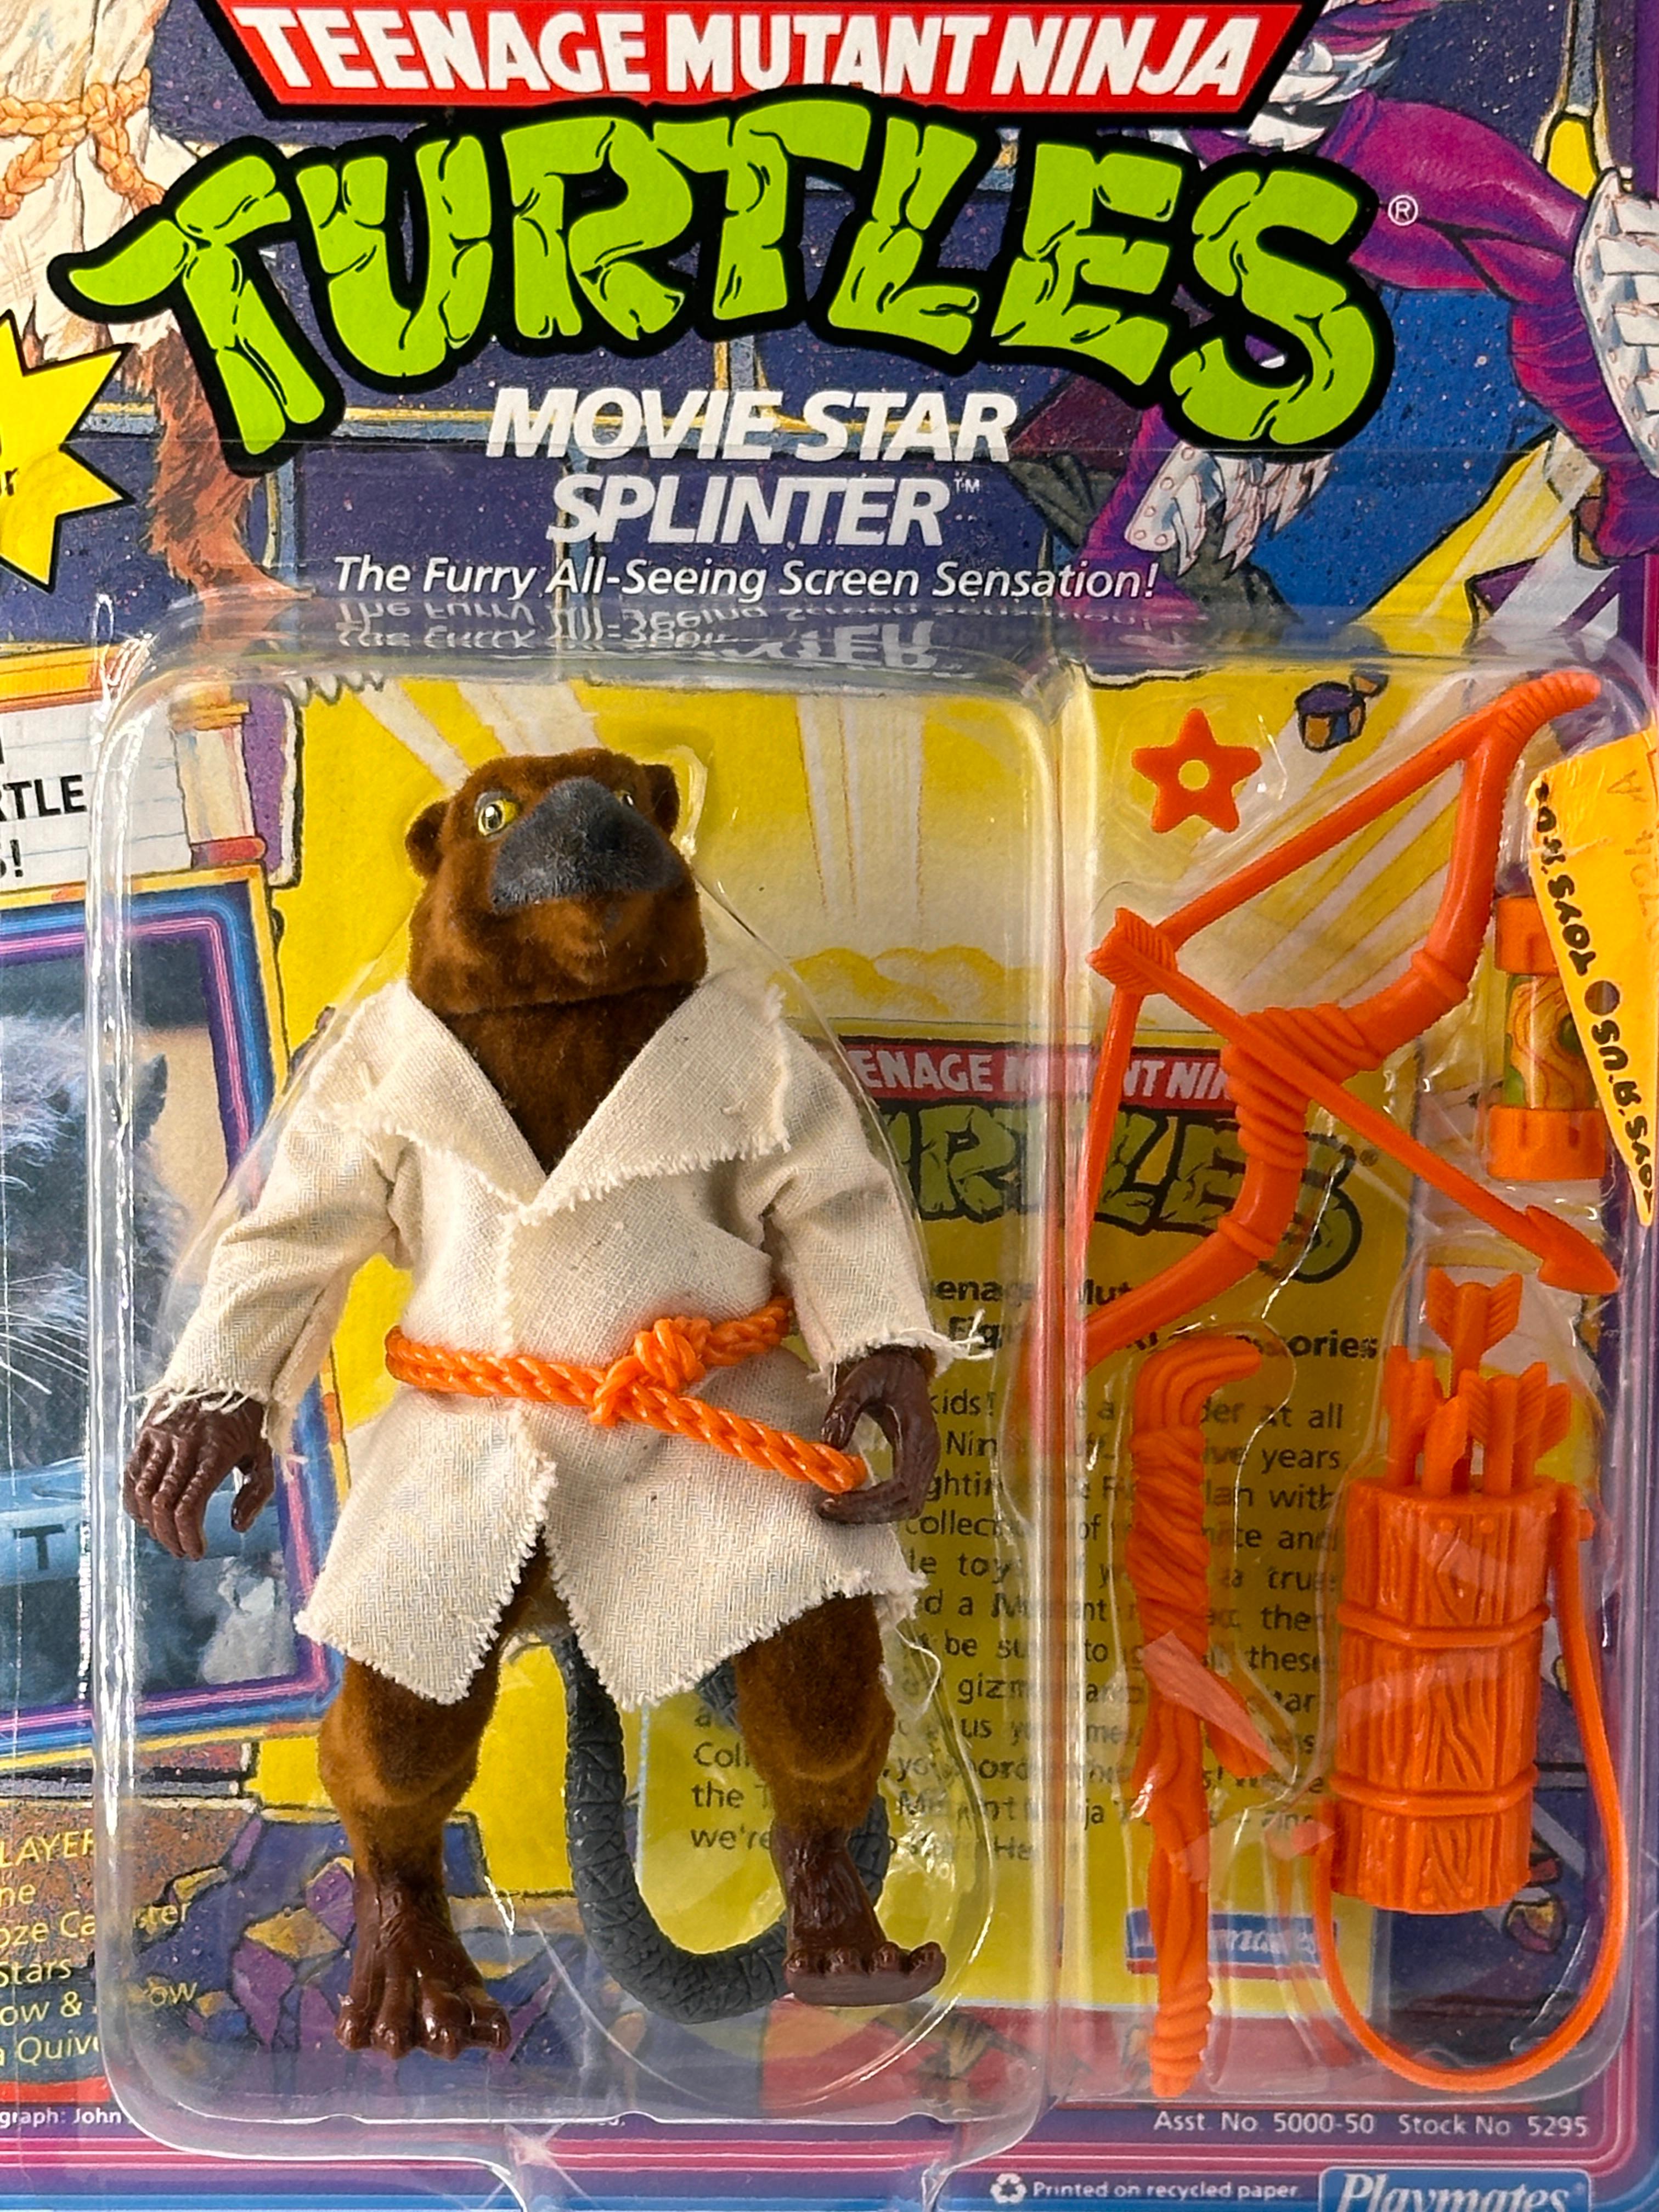 1992 TMNT/Teenage Mutant Ninja Turtles Playmates Movie Star Splinter Action Figure